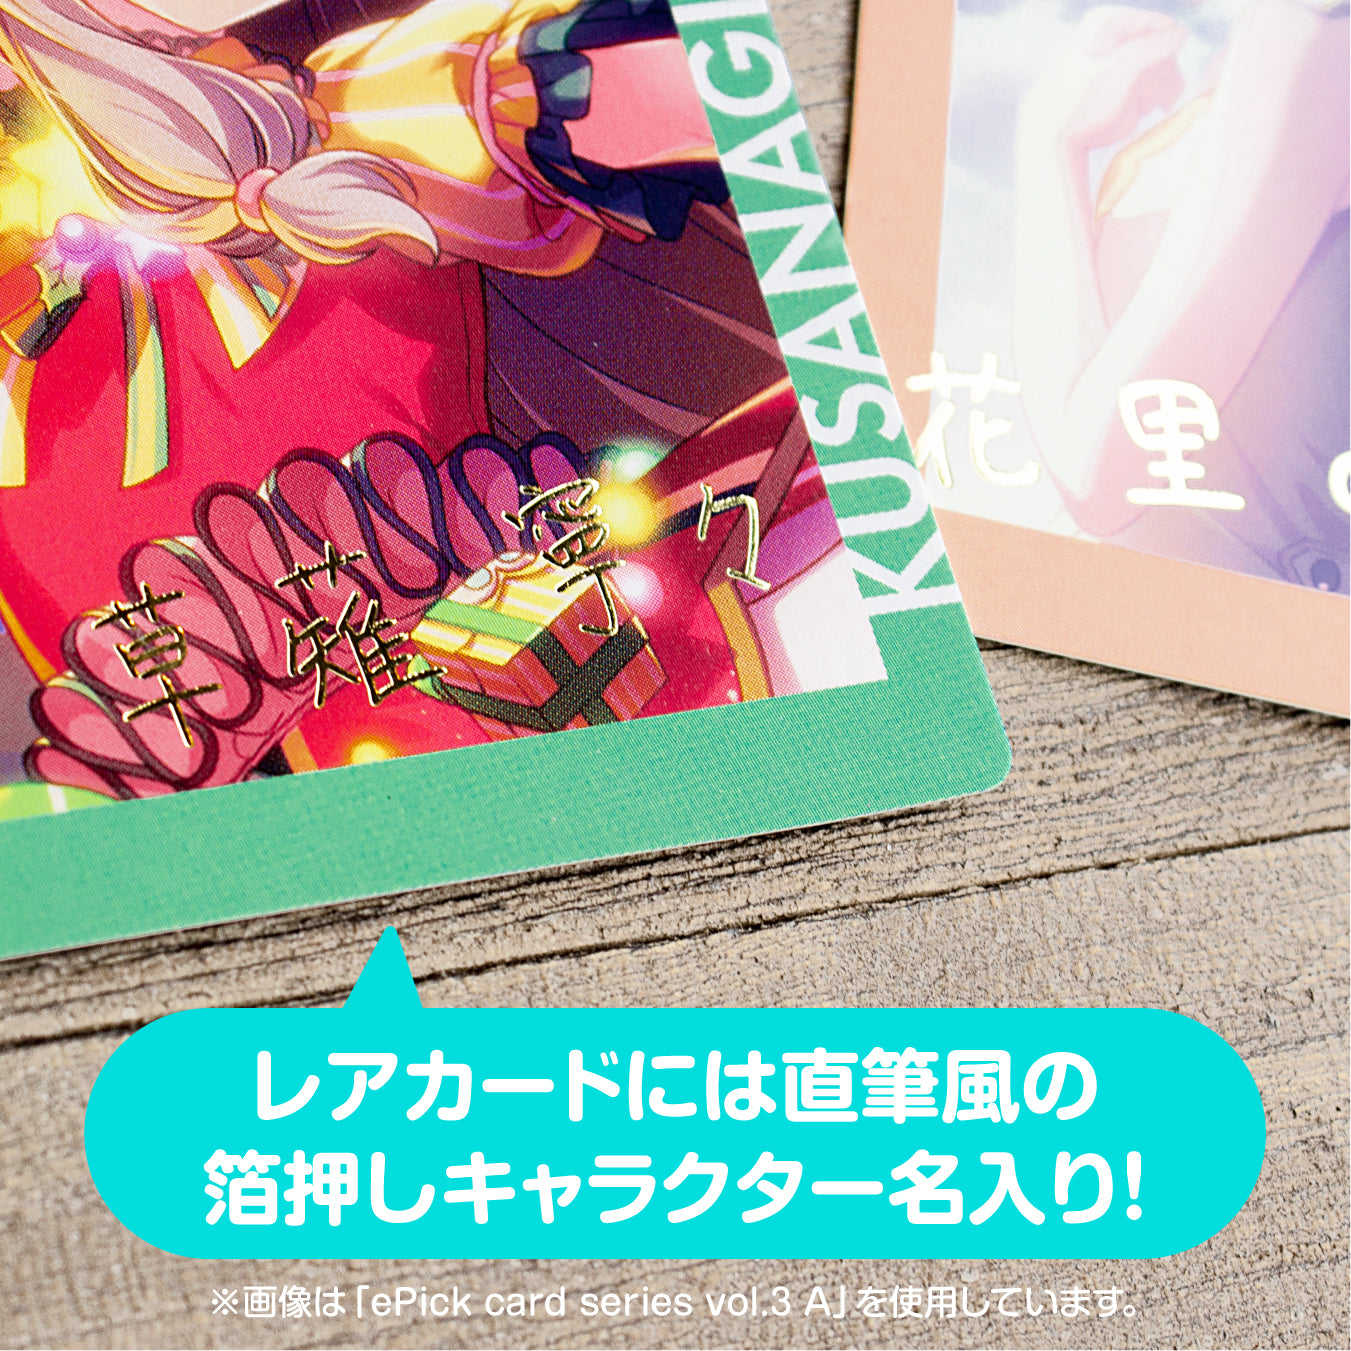 【予約商品】ePick card series vol.3 B BOX 特典付き［花里 みのり］